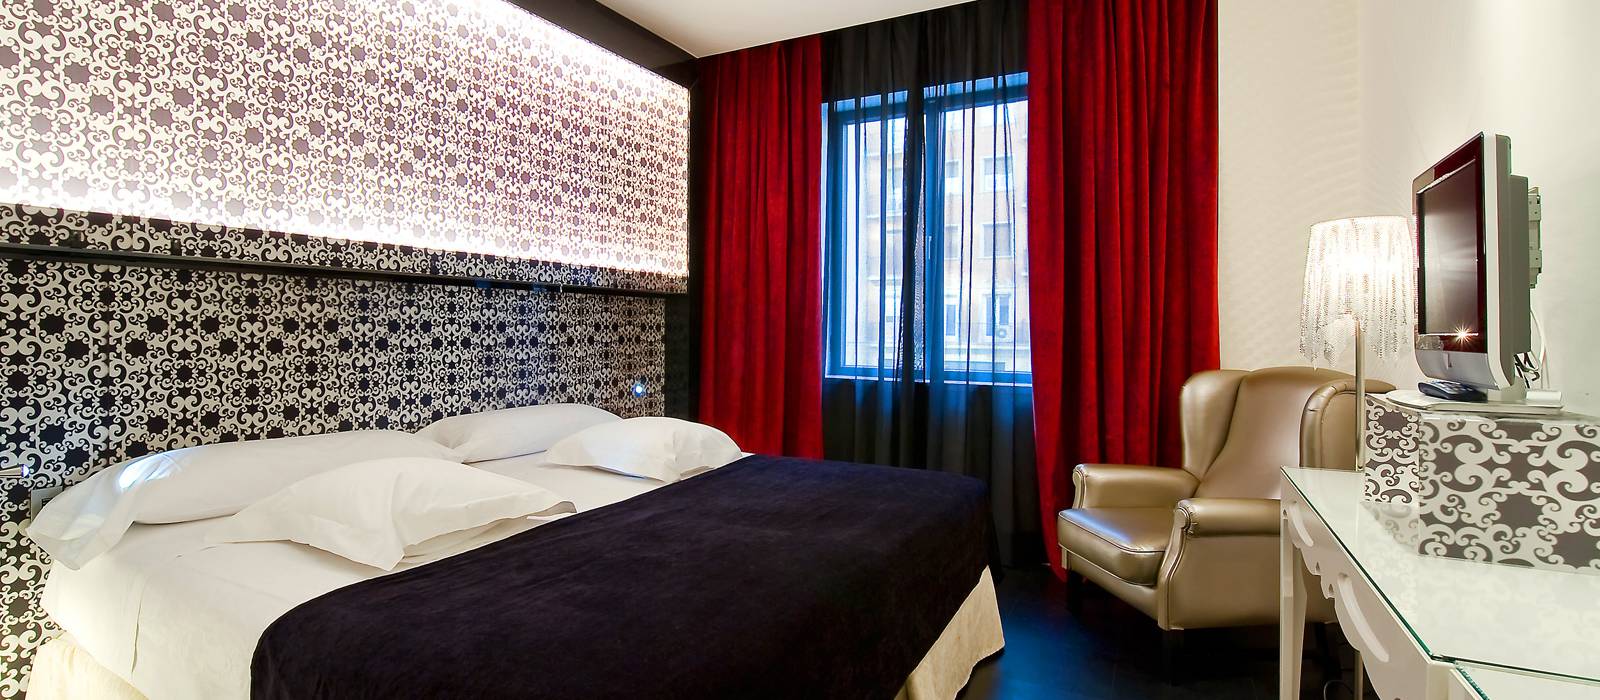 Ofertas Hotel Vincci Madrid Vía 66 - Alójate 3 noches y ahorra! 15%